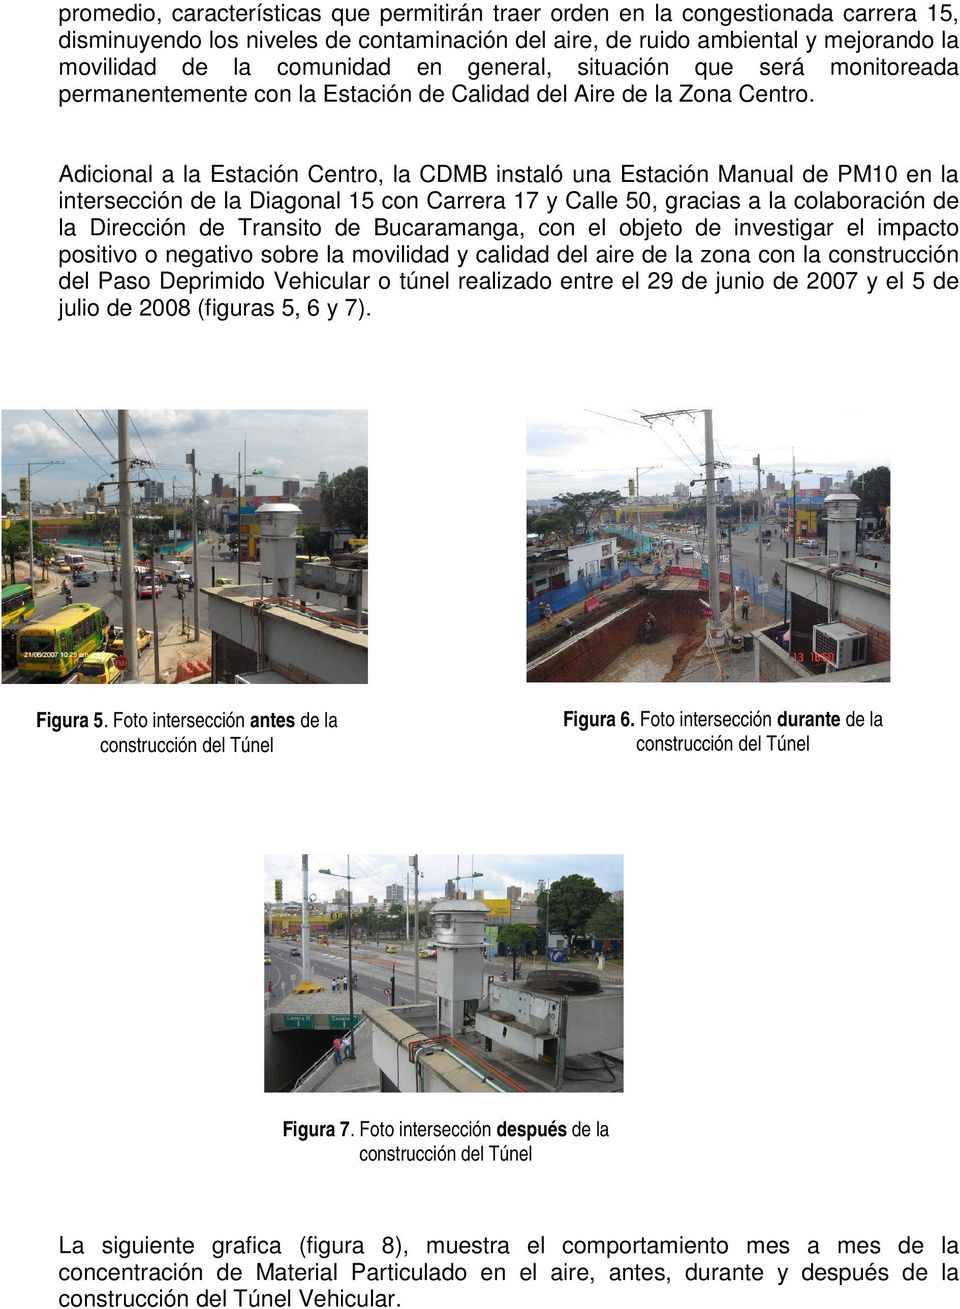 Adicional a la Estación Centro, la CDMB instaló una Estación Manual de PM10 en la intersección de la Diagonal 15 con Carrera 17 y Calle 50, gracias a la colaboración de la Dirección de Transito de